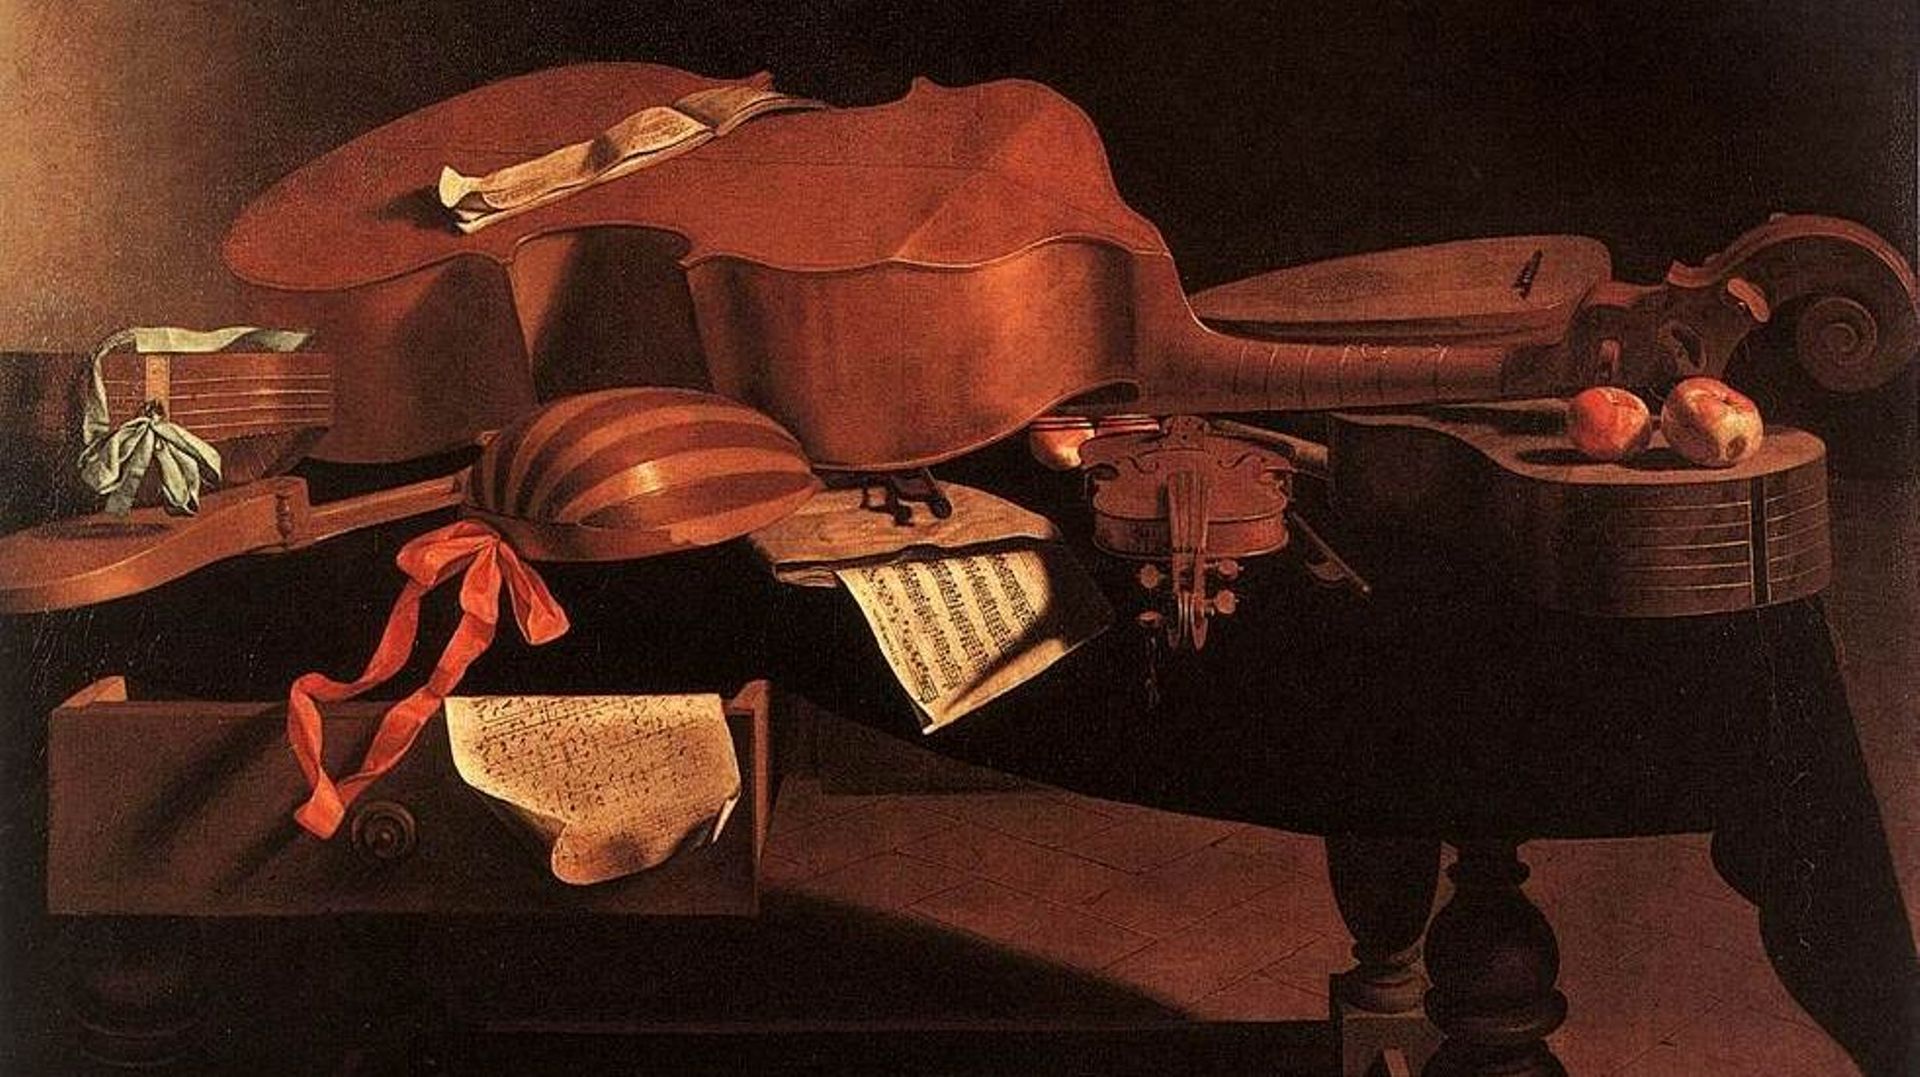 Instruments de musique baroque sur une table par Baschenis (Collection : Musées royaux des beaux-arts de Belgique)